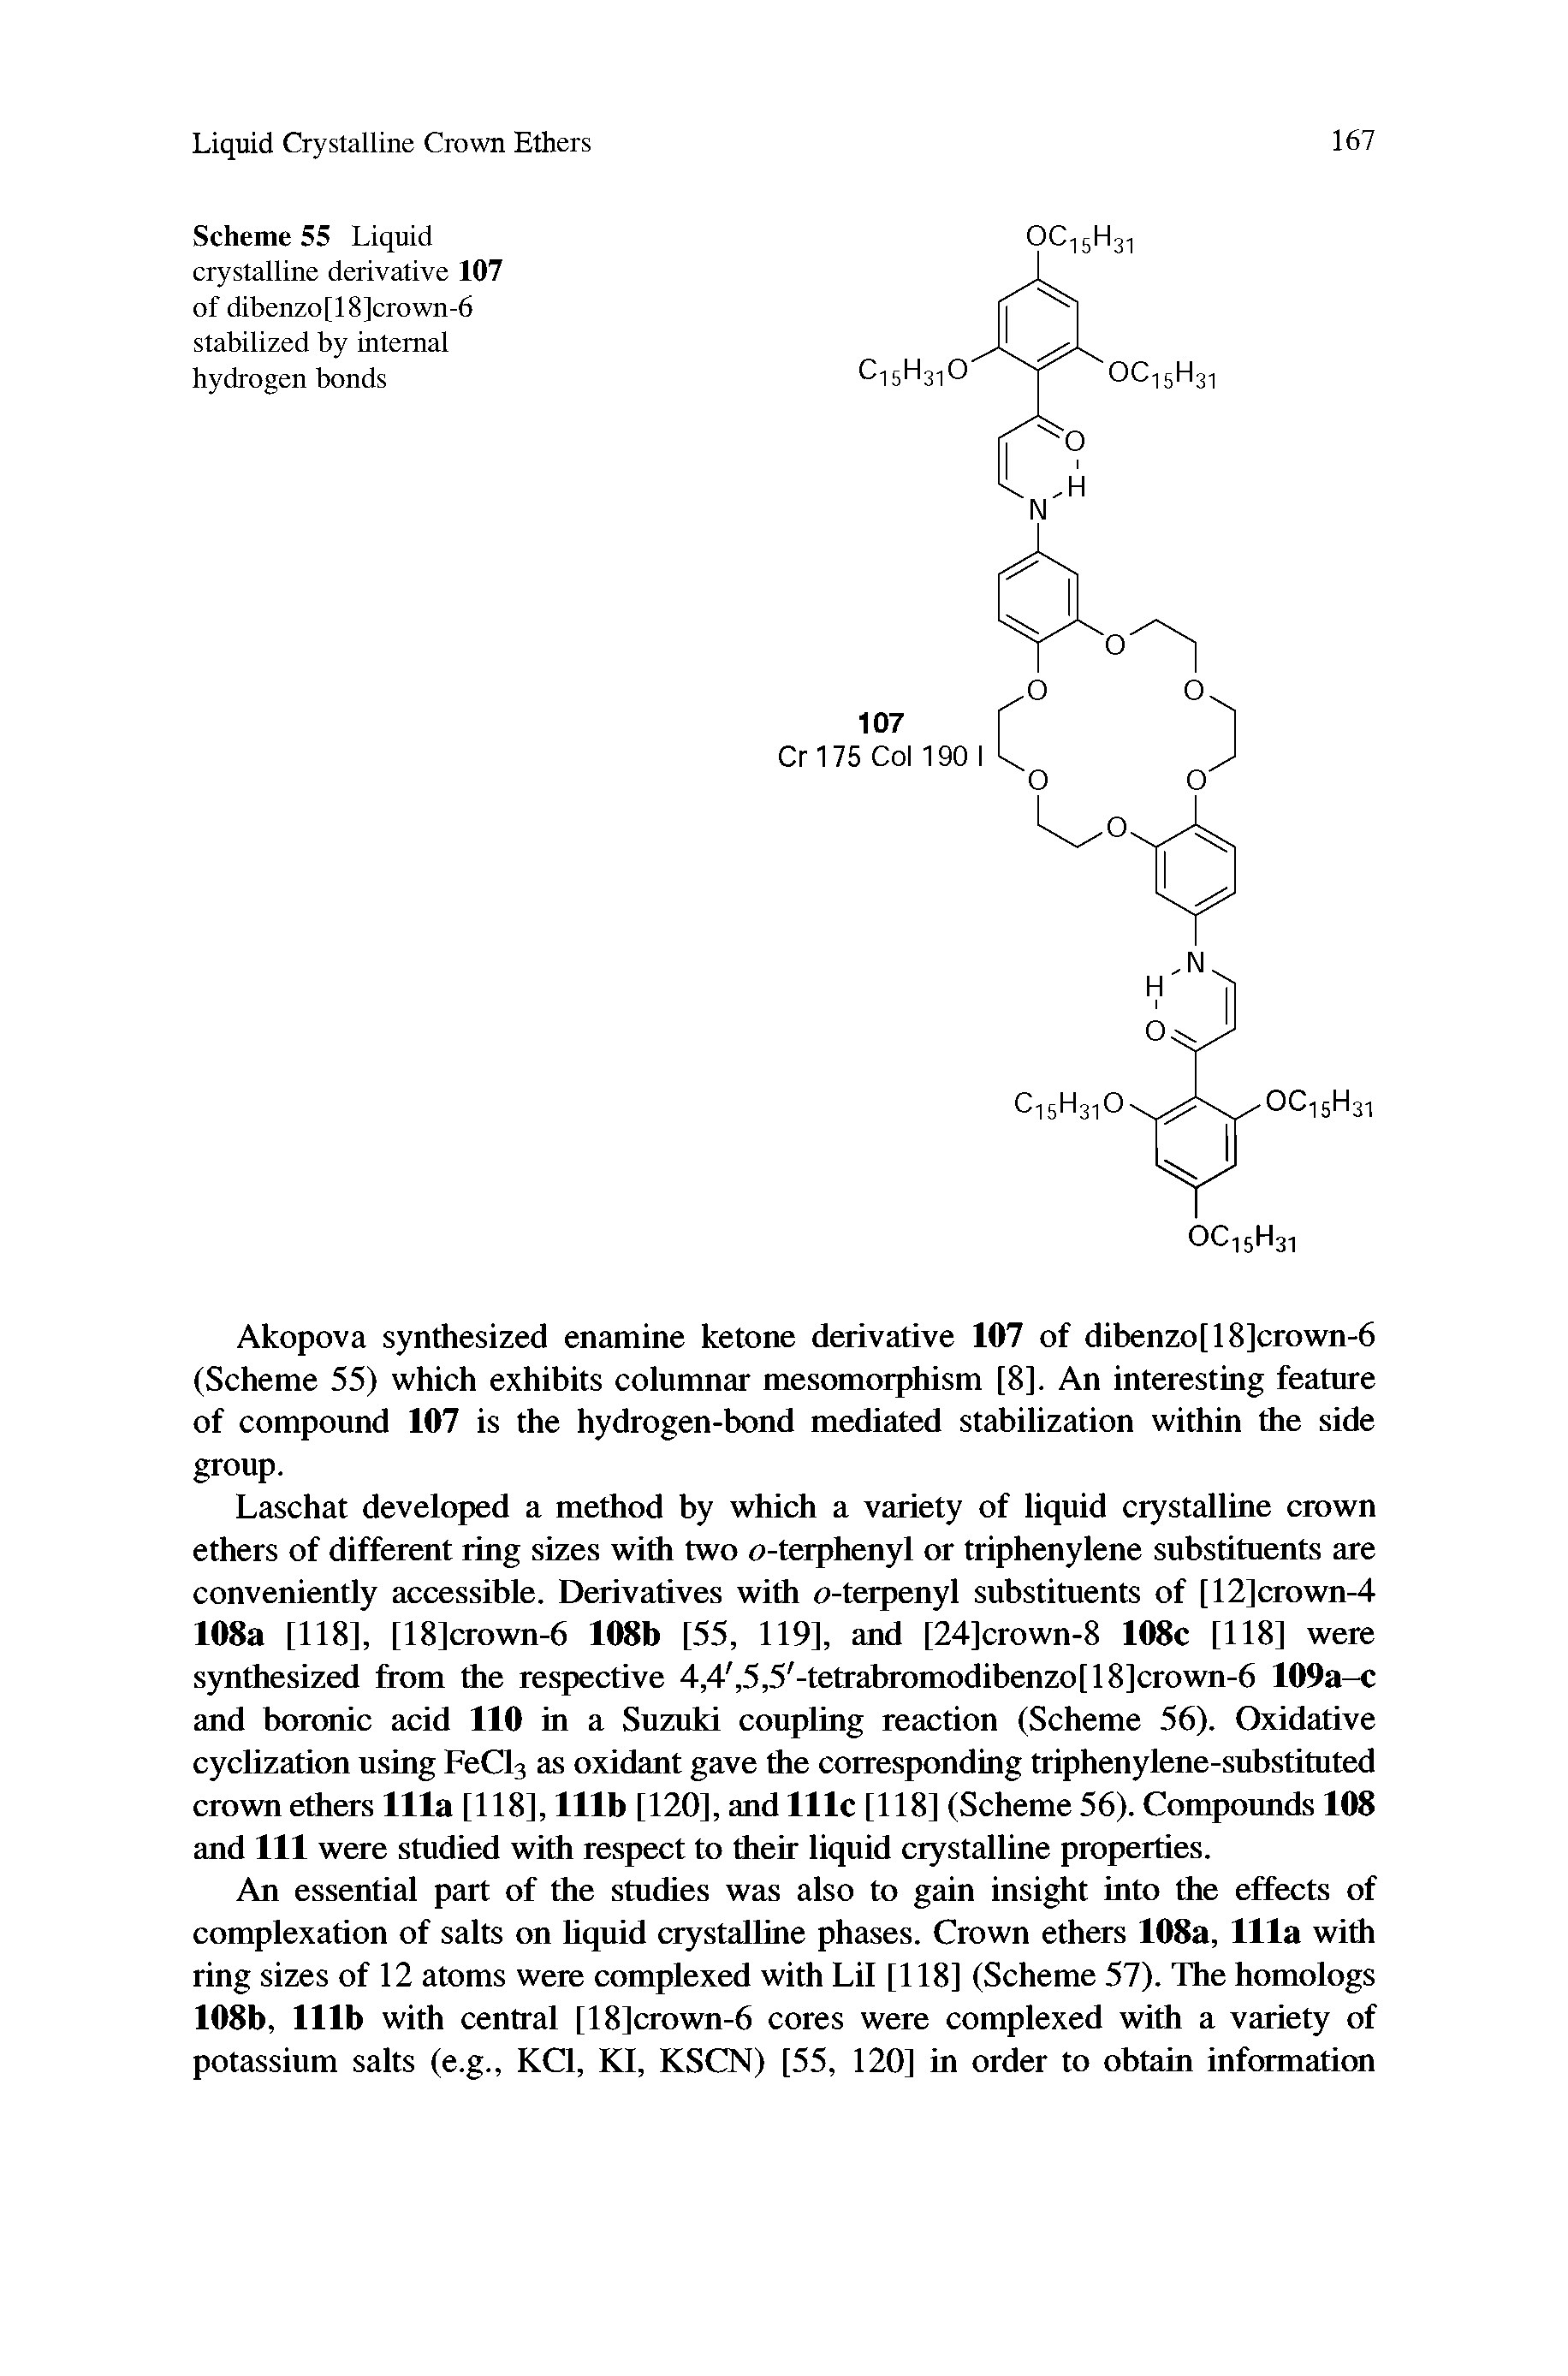 Scheme 55 Liquid crystalline derivative 107 of dibenzo[18]crown-6 stabilized by internal hydrogen bonds...